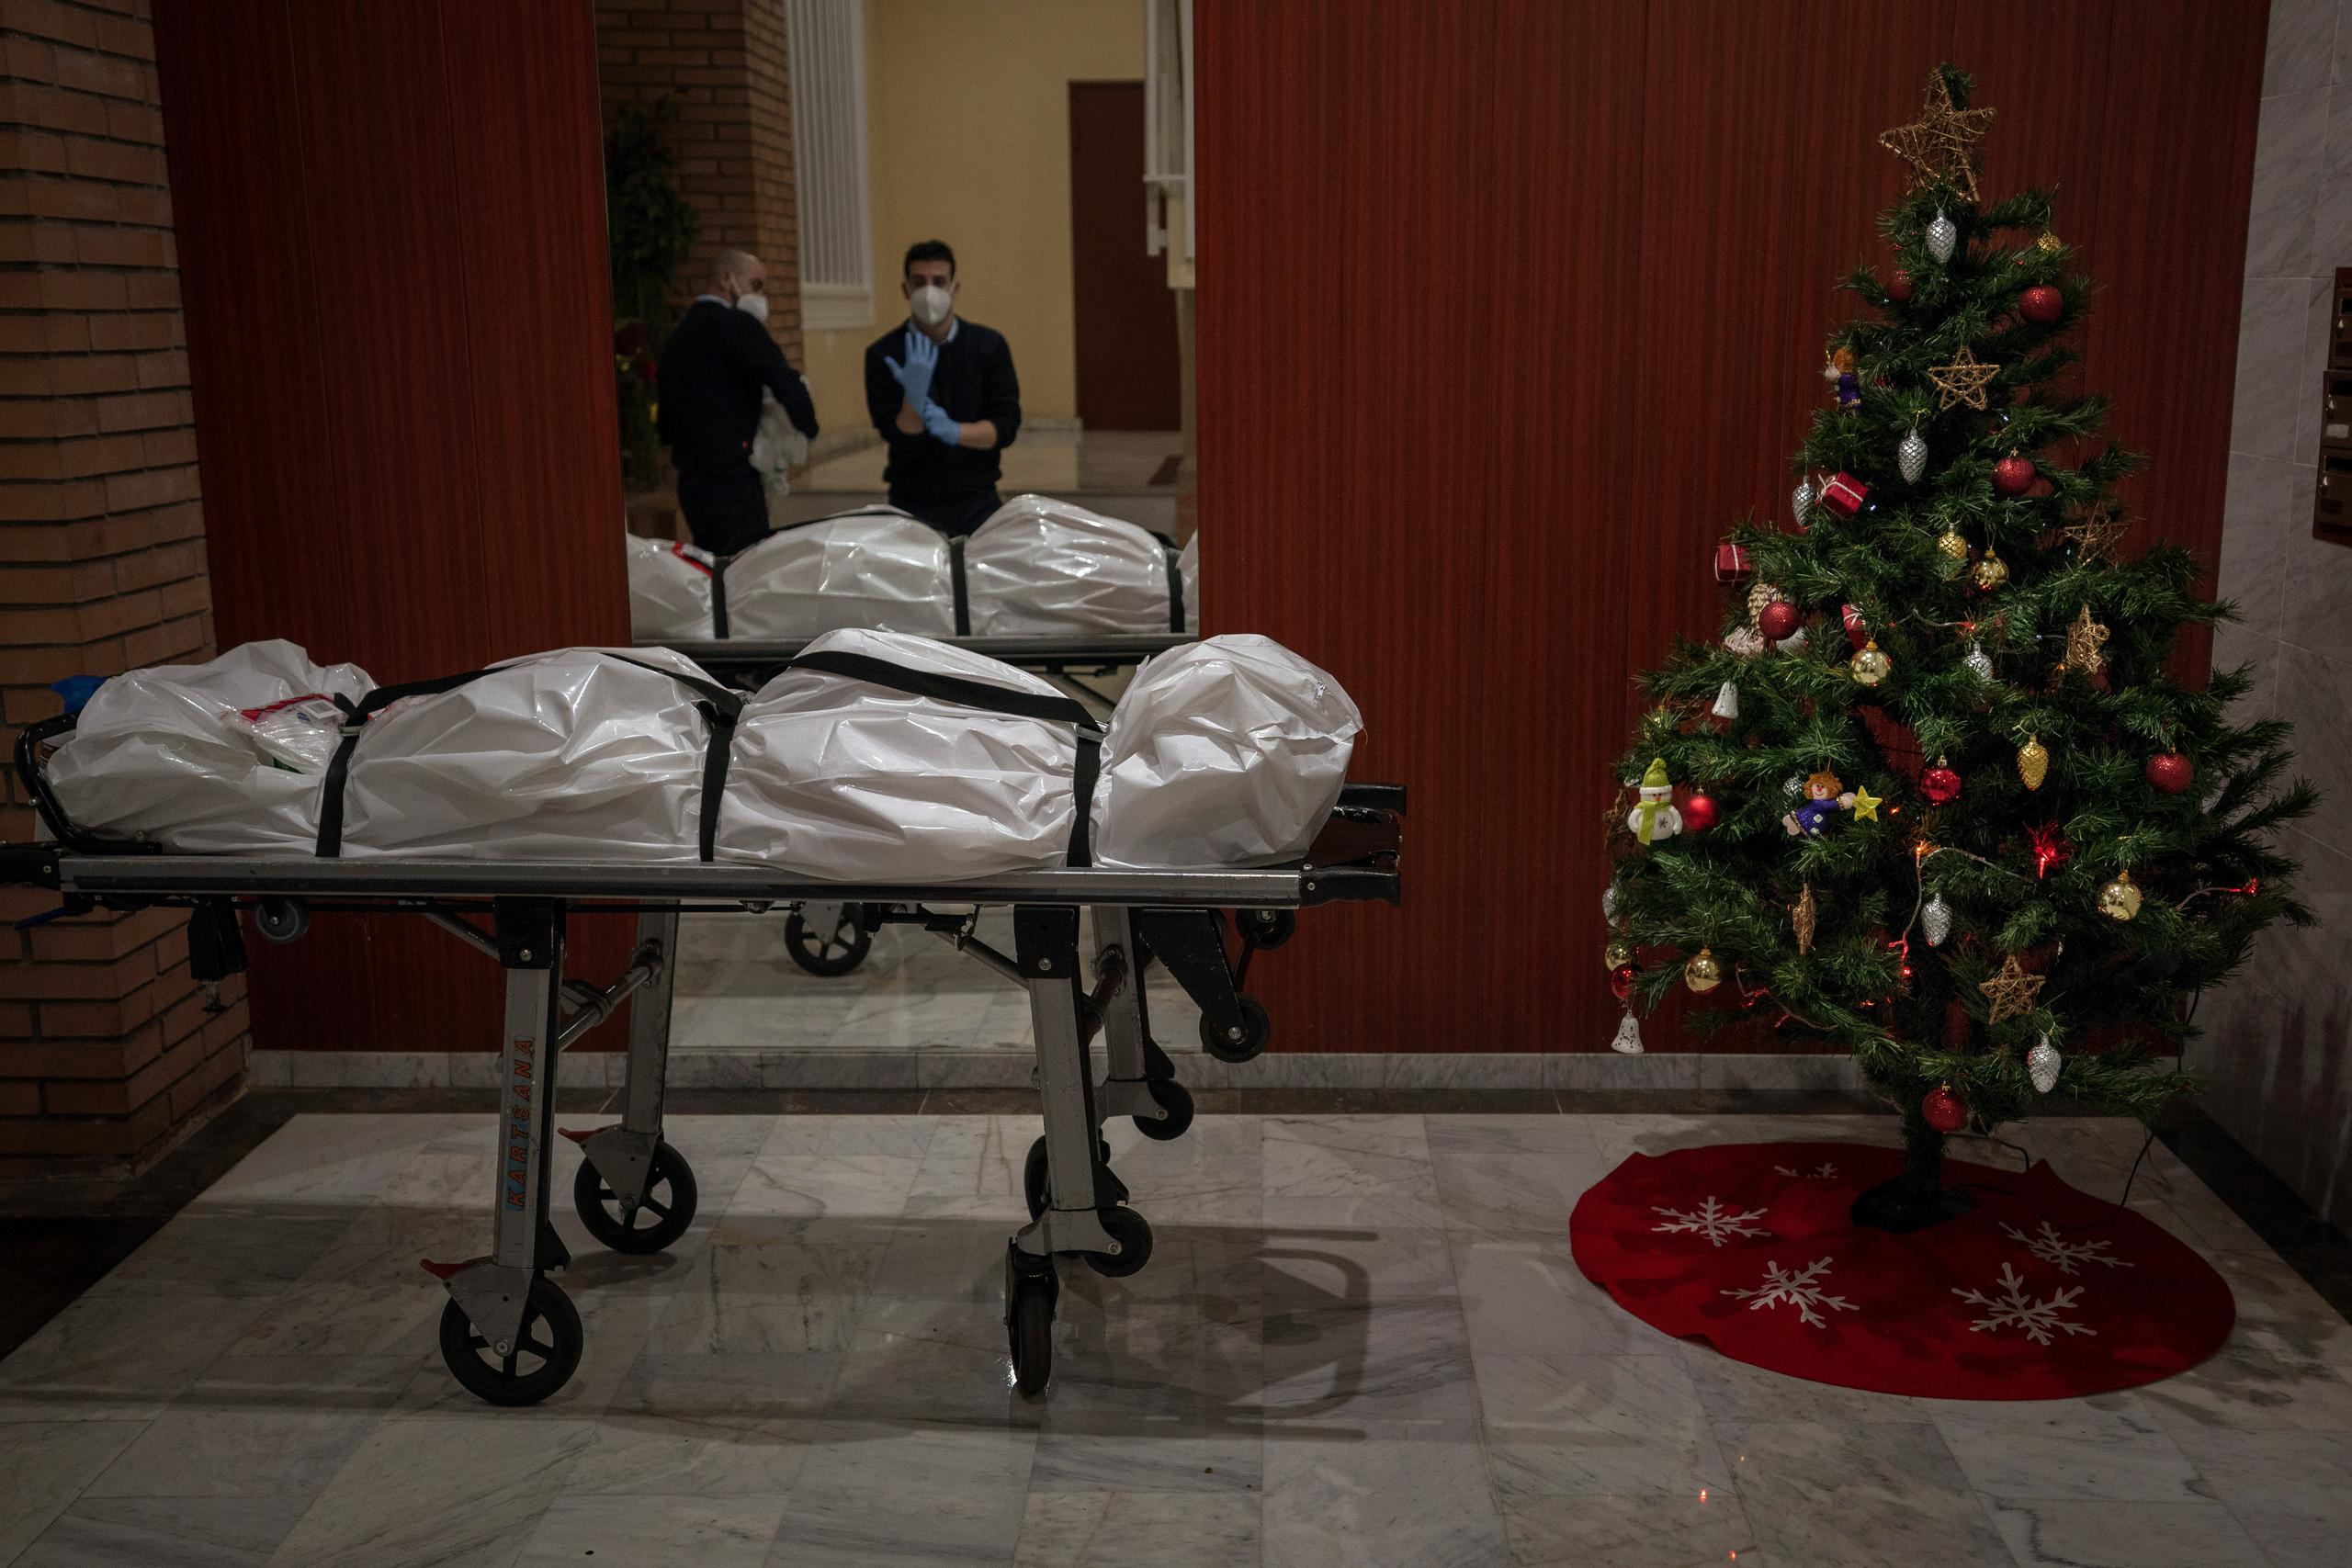 Trabajadores funerarios se quitan su ropa protectora a la entrada de un edificio decorado con un árbol de Navidad, luego de haber retirado el cuerpo de una persona que presuntamente falleció de COVID-19, en Barcelona, España.